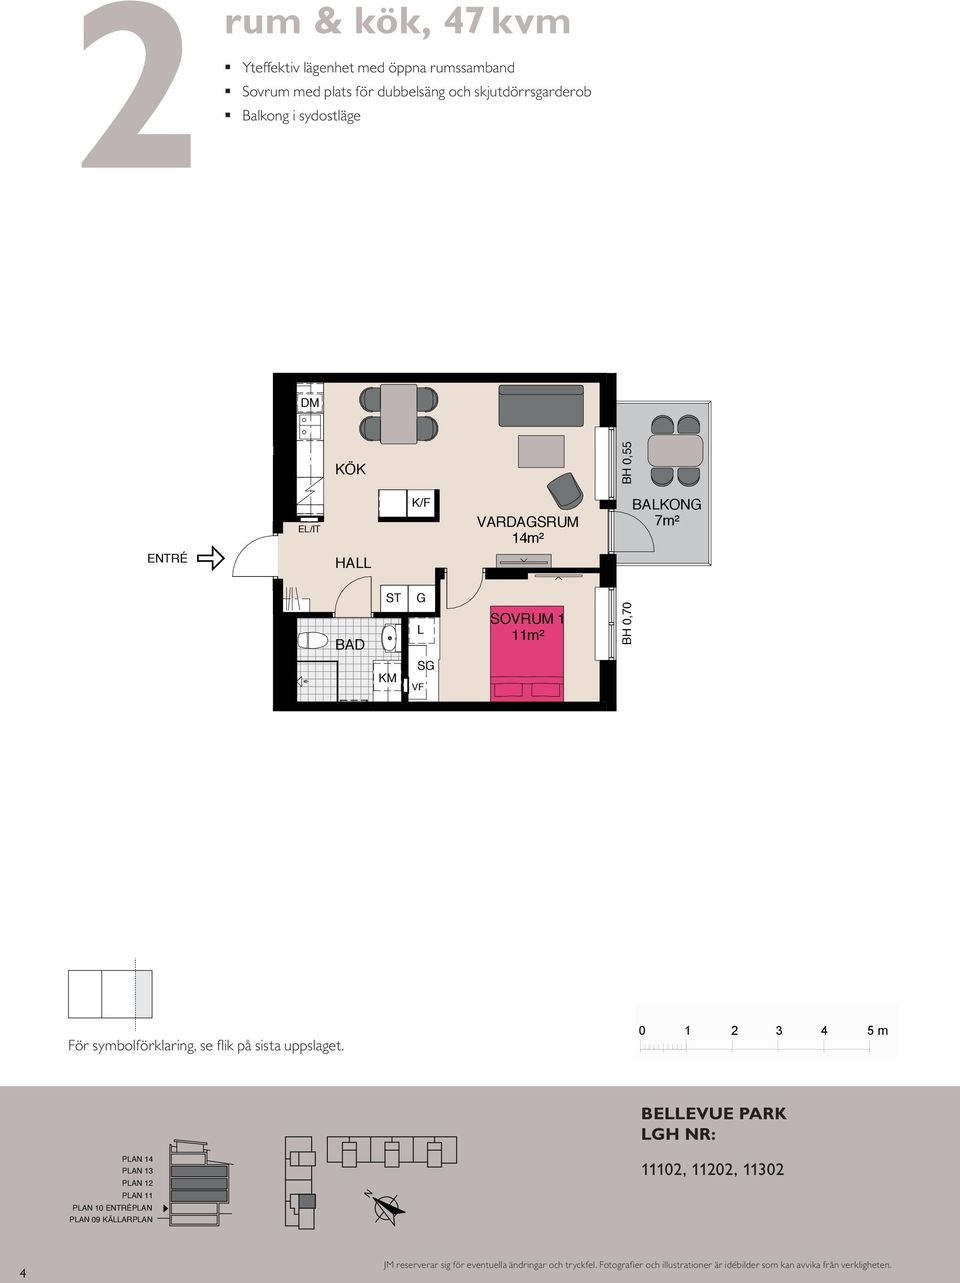 öppna rumssammanband Kompakt lägenhet med öppna rumssamband Sovrum med plats för två Balkong mot gård ETRÉ ETRÉ BAKOG 8 BH 0,55 m HA HA 4 K/F K/F G VF K/F m 4m² 4m² G VF SOVRUM SOVRUM m² m² SOVRUM BH